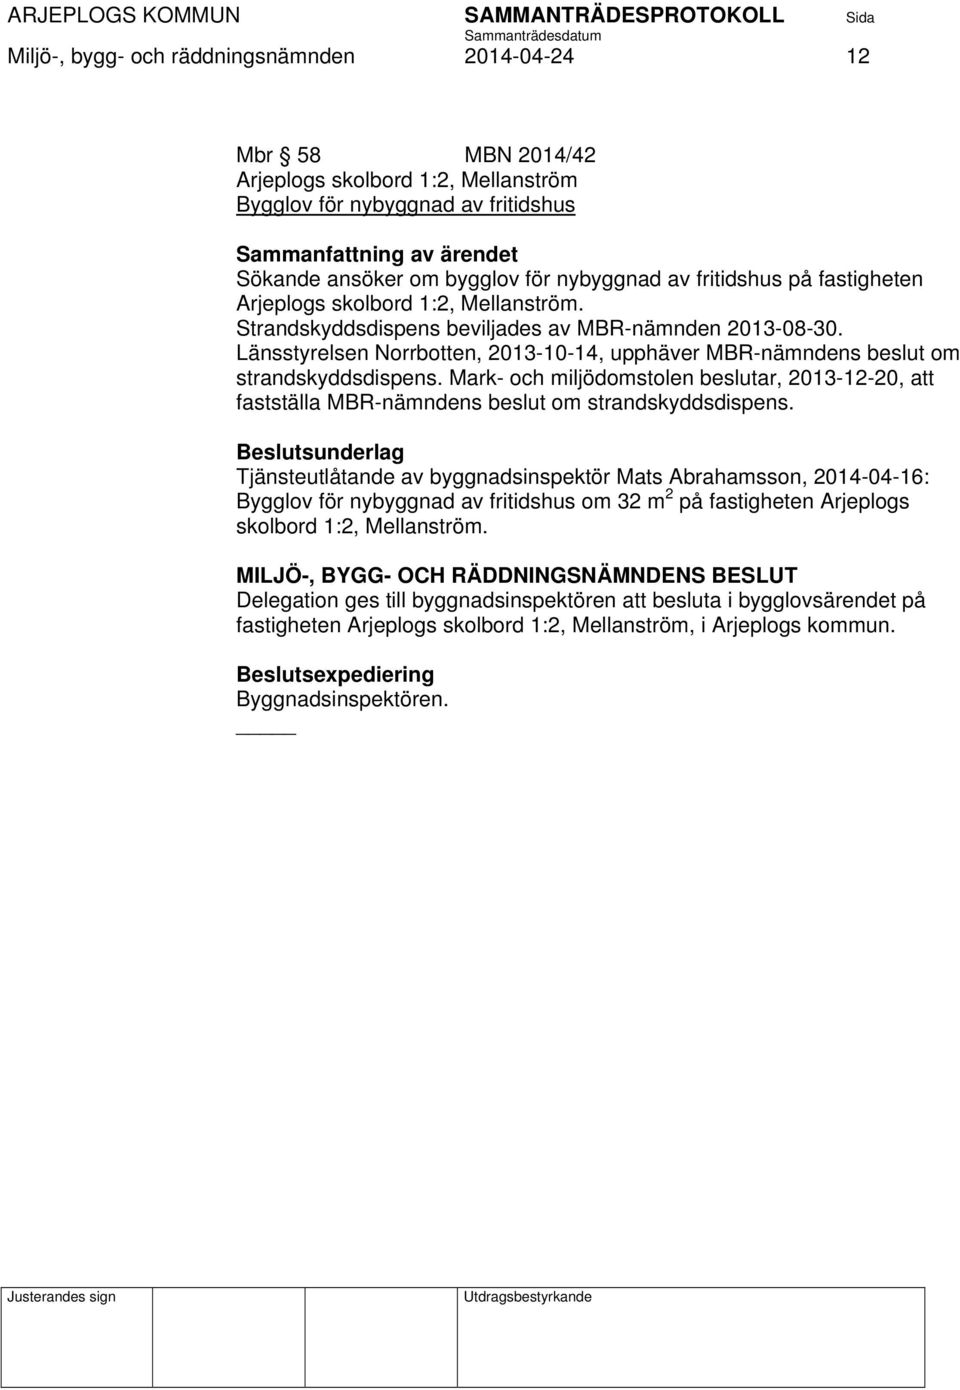 Länsstyrelsen Norrbotten, 2013-10-14, upphäver MBR-nämndens beslut om strandskyddsdispens. Mark- och miljödomstolen beslutar, 2013-12-20, att fastställa MBR-nämndens beslut om strandskyddsdispens.